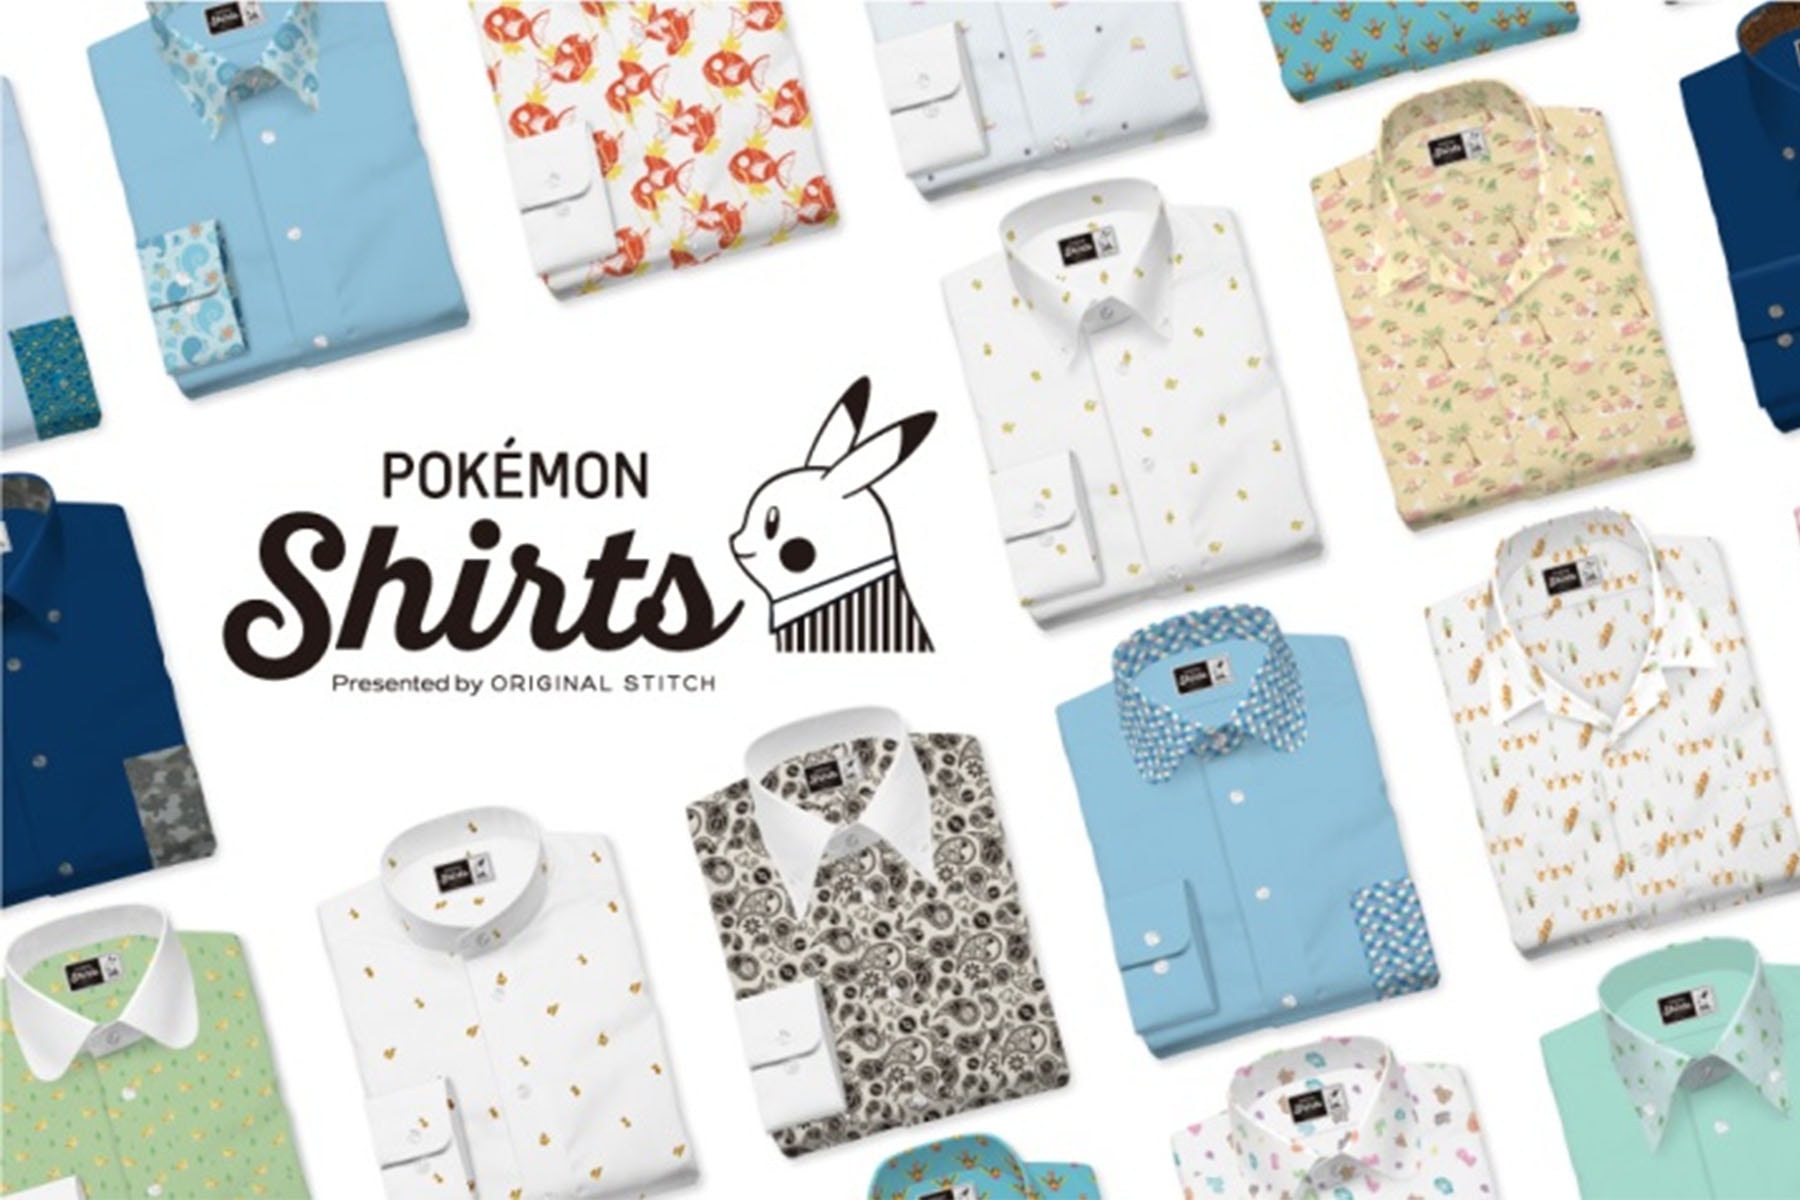 ポケモン pokemon オリジナルスティッチ Original Stitch とチームアップし151種の“ポケモンシャツ”を販売